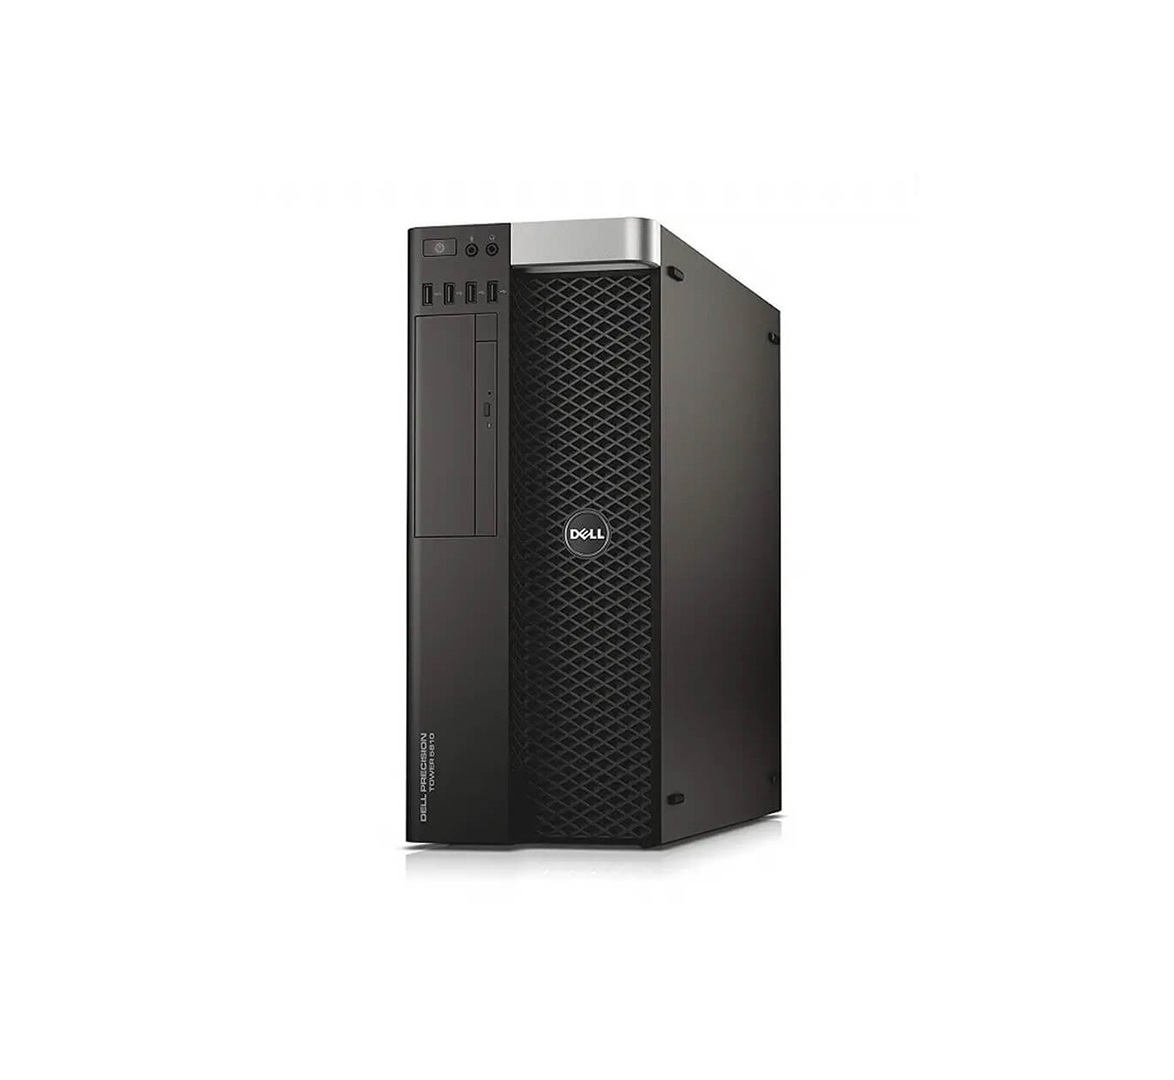 Dell Precision T3610 Tower Desktop PC, Intel Xeon E5 series CPU ...